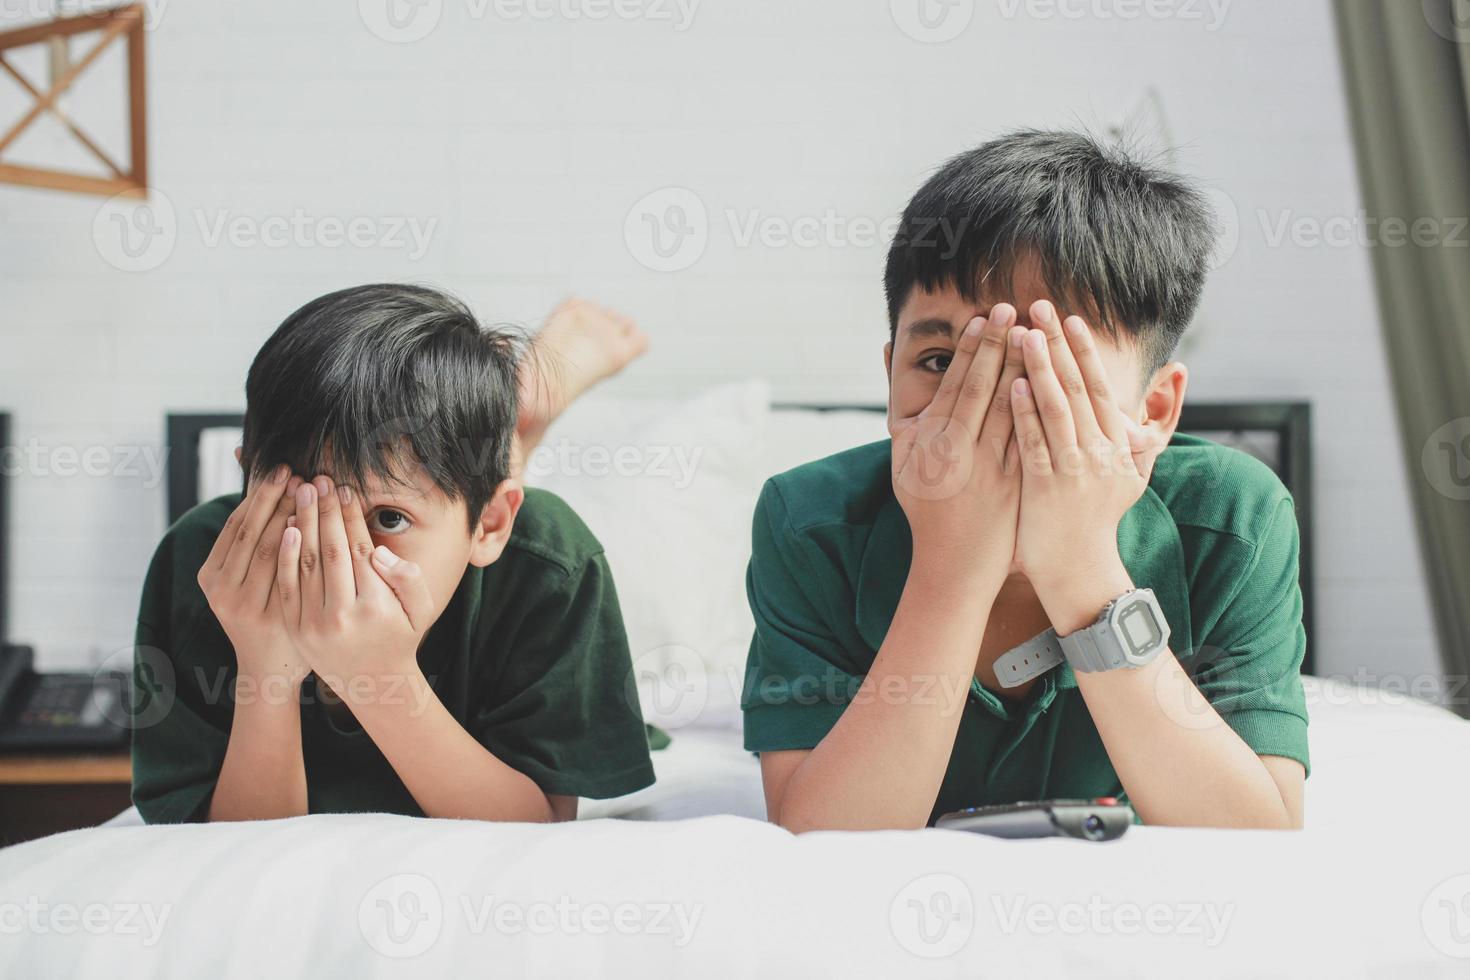 due fratelli sdraiati sul letto a guardare la televisione con espressione di paura coprendosi gli occhi con le mani foto